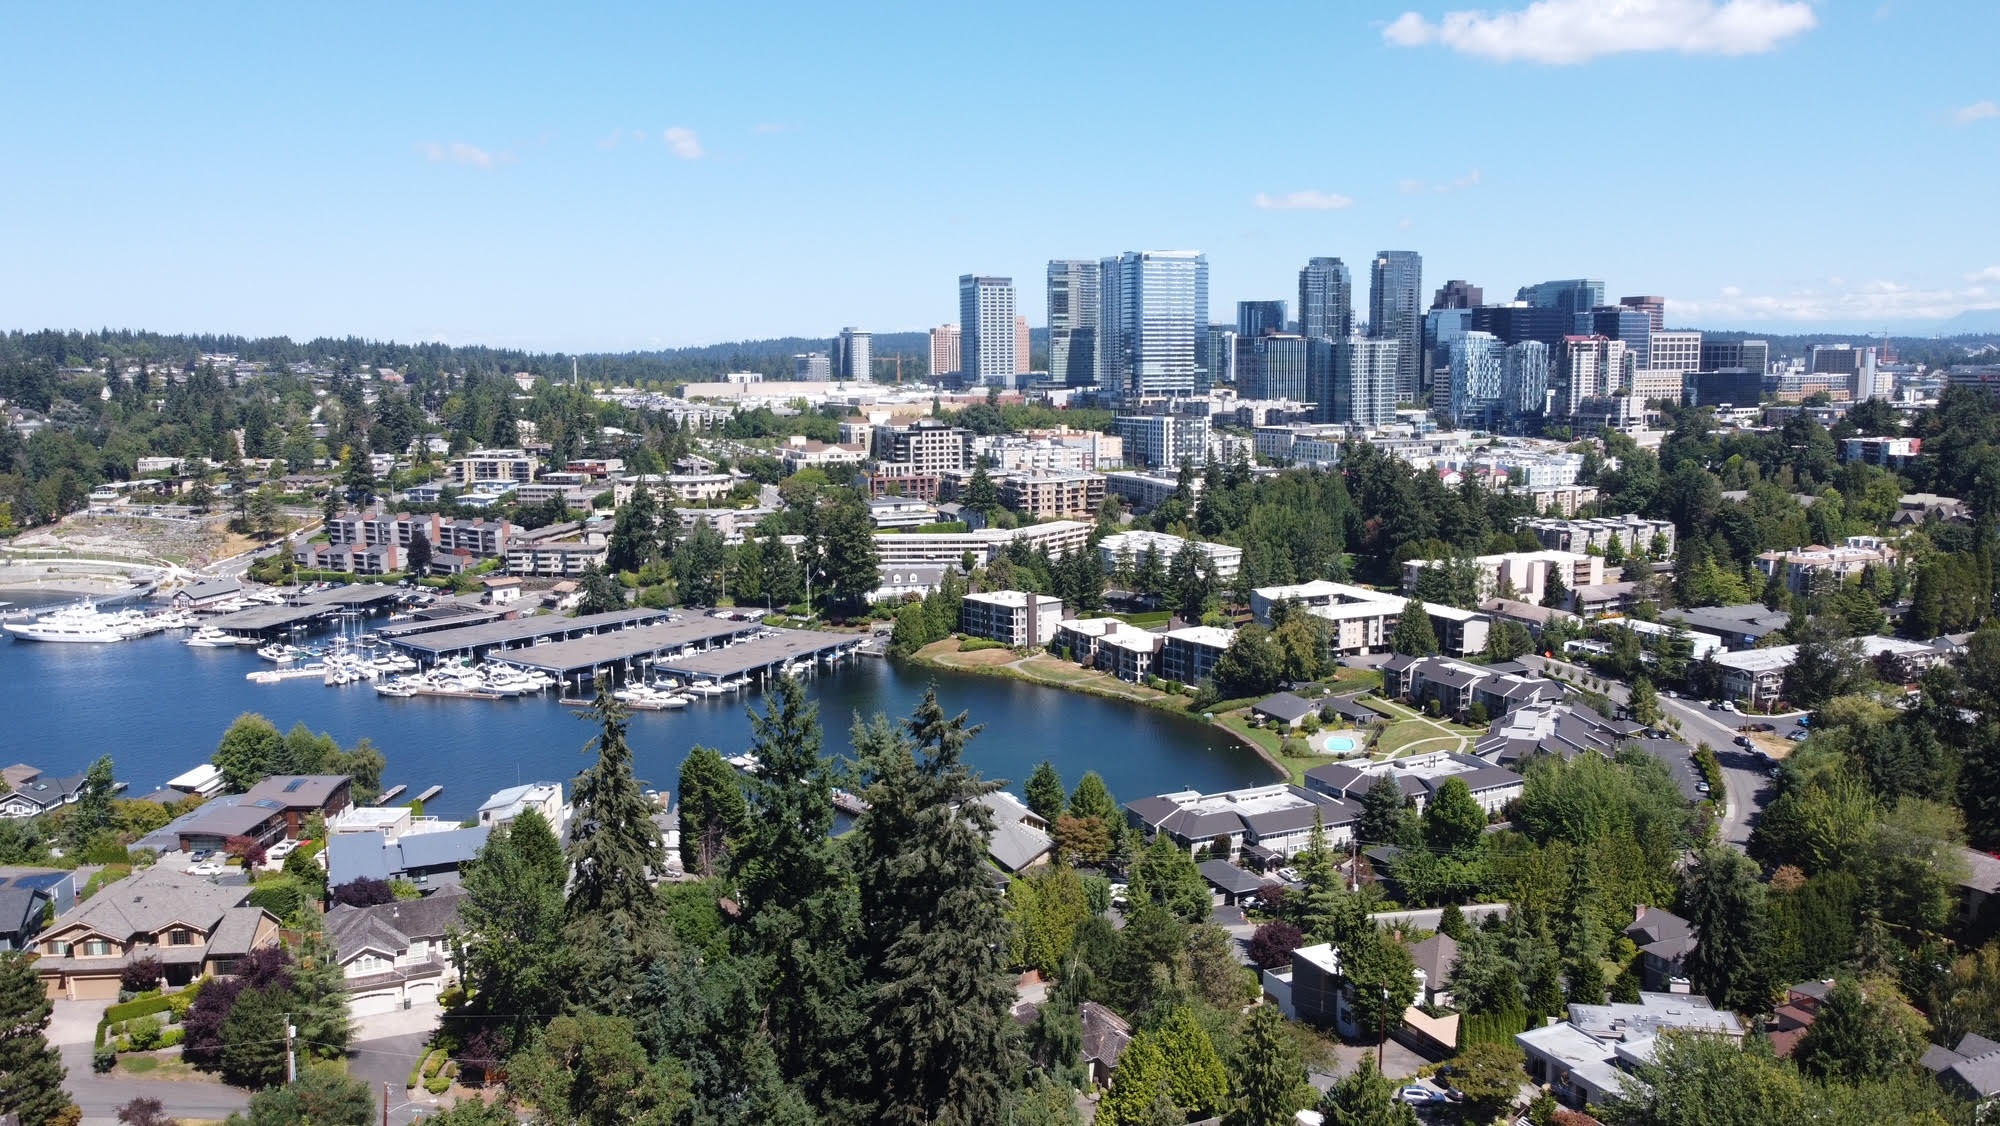 Birdseye view of Downtown Bellevue